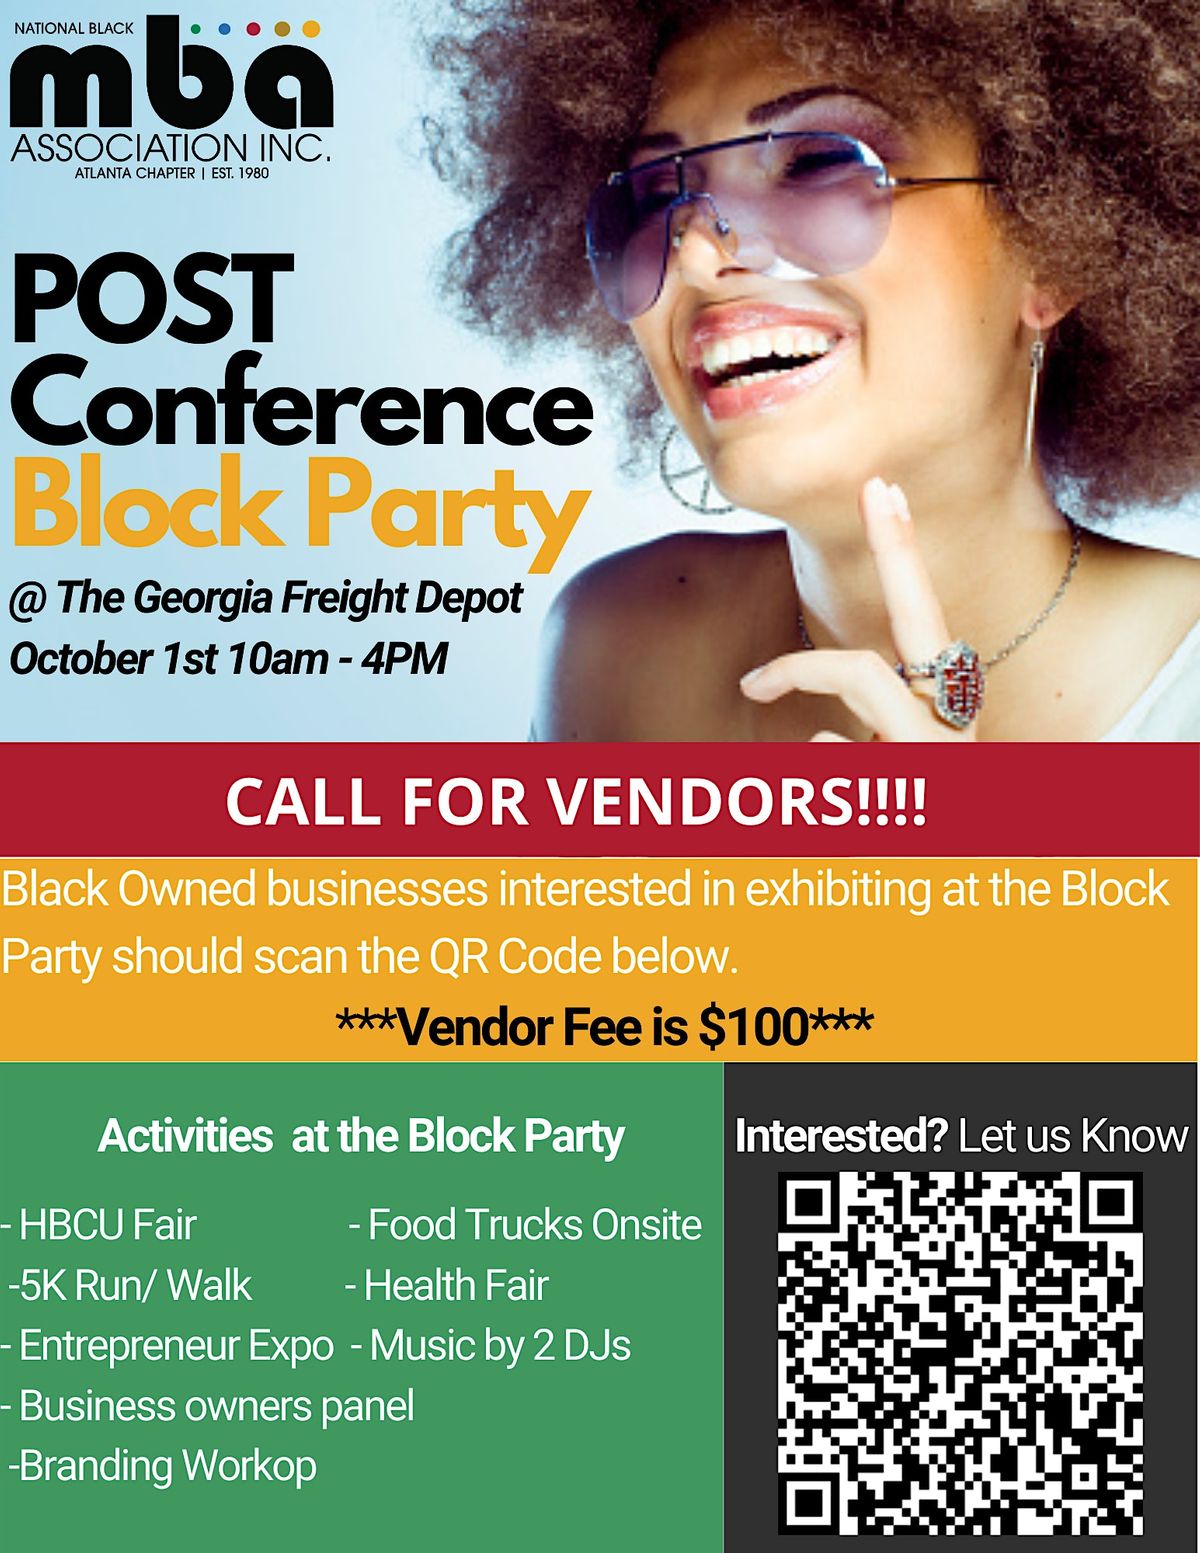 NBMBAA Block Party Vendor registration